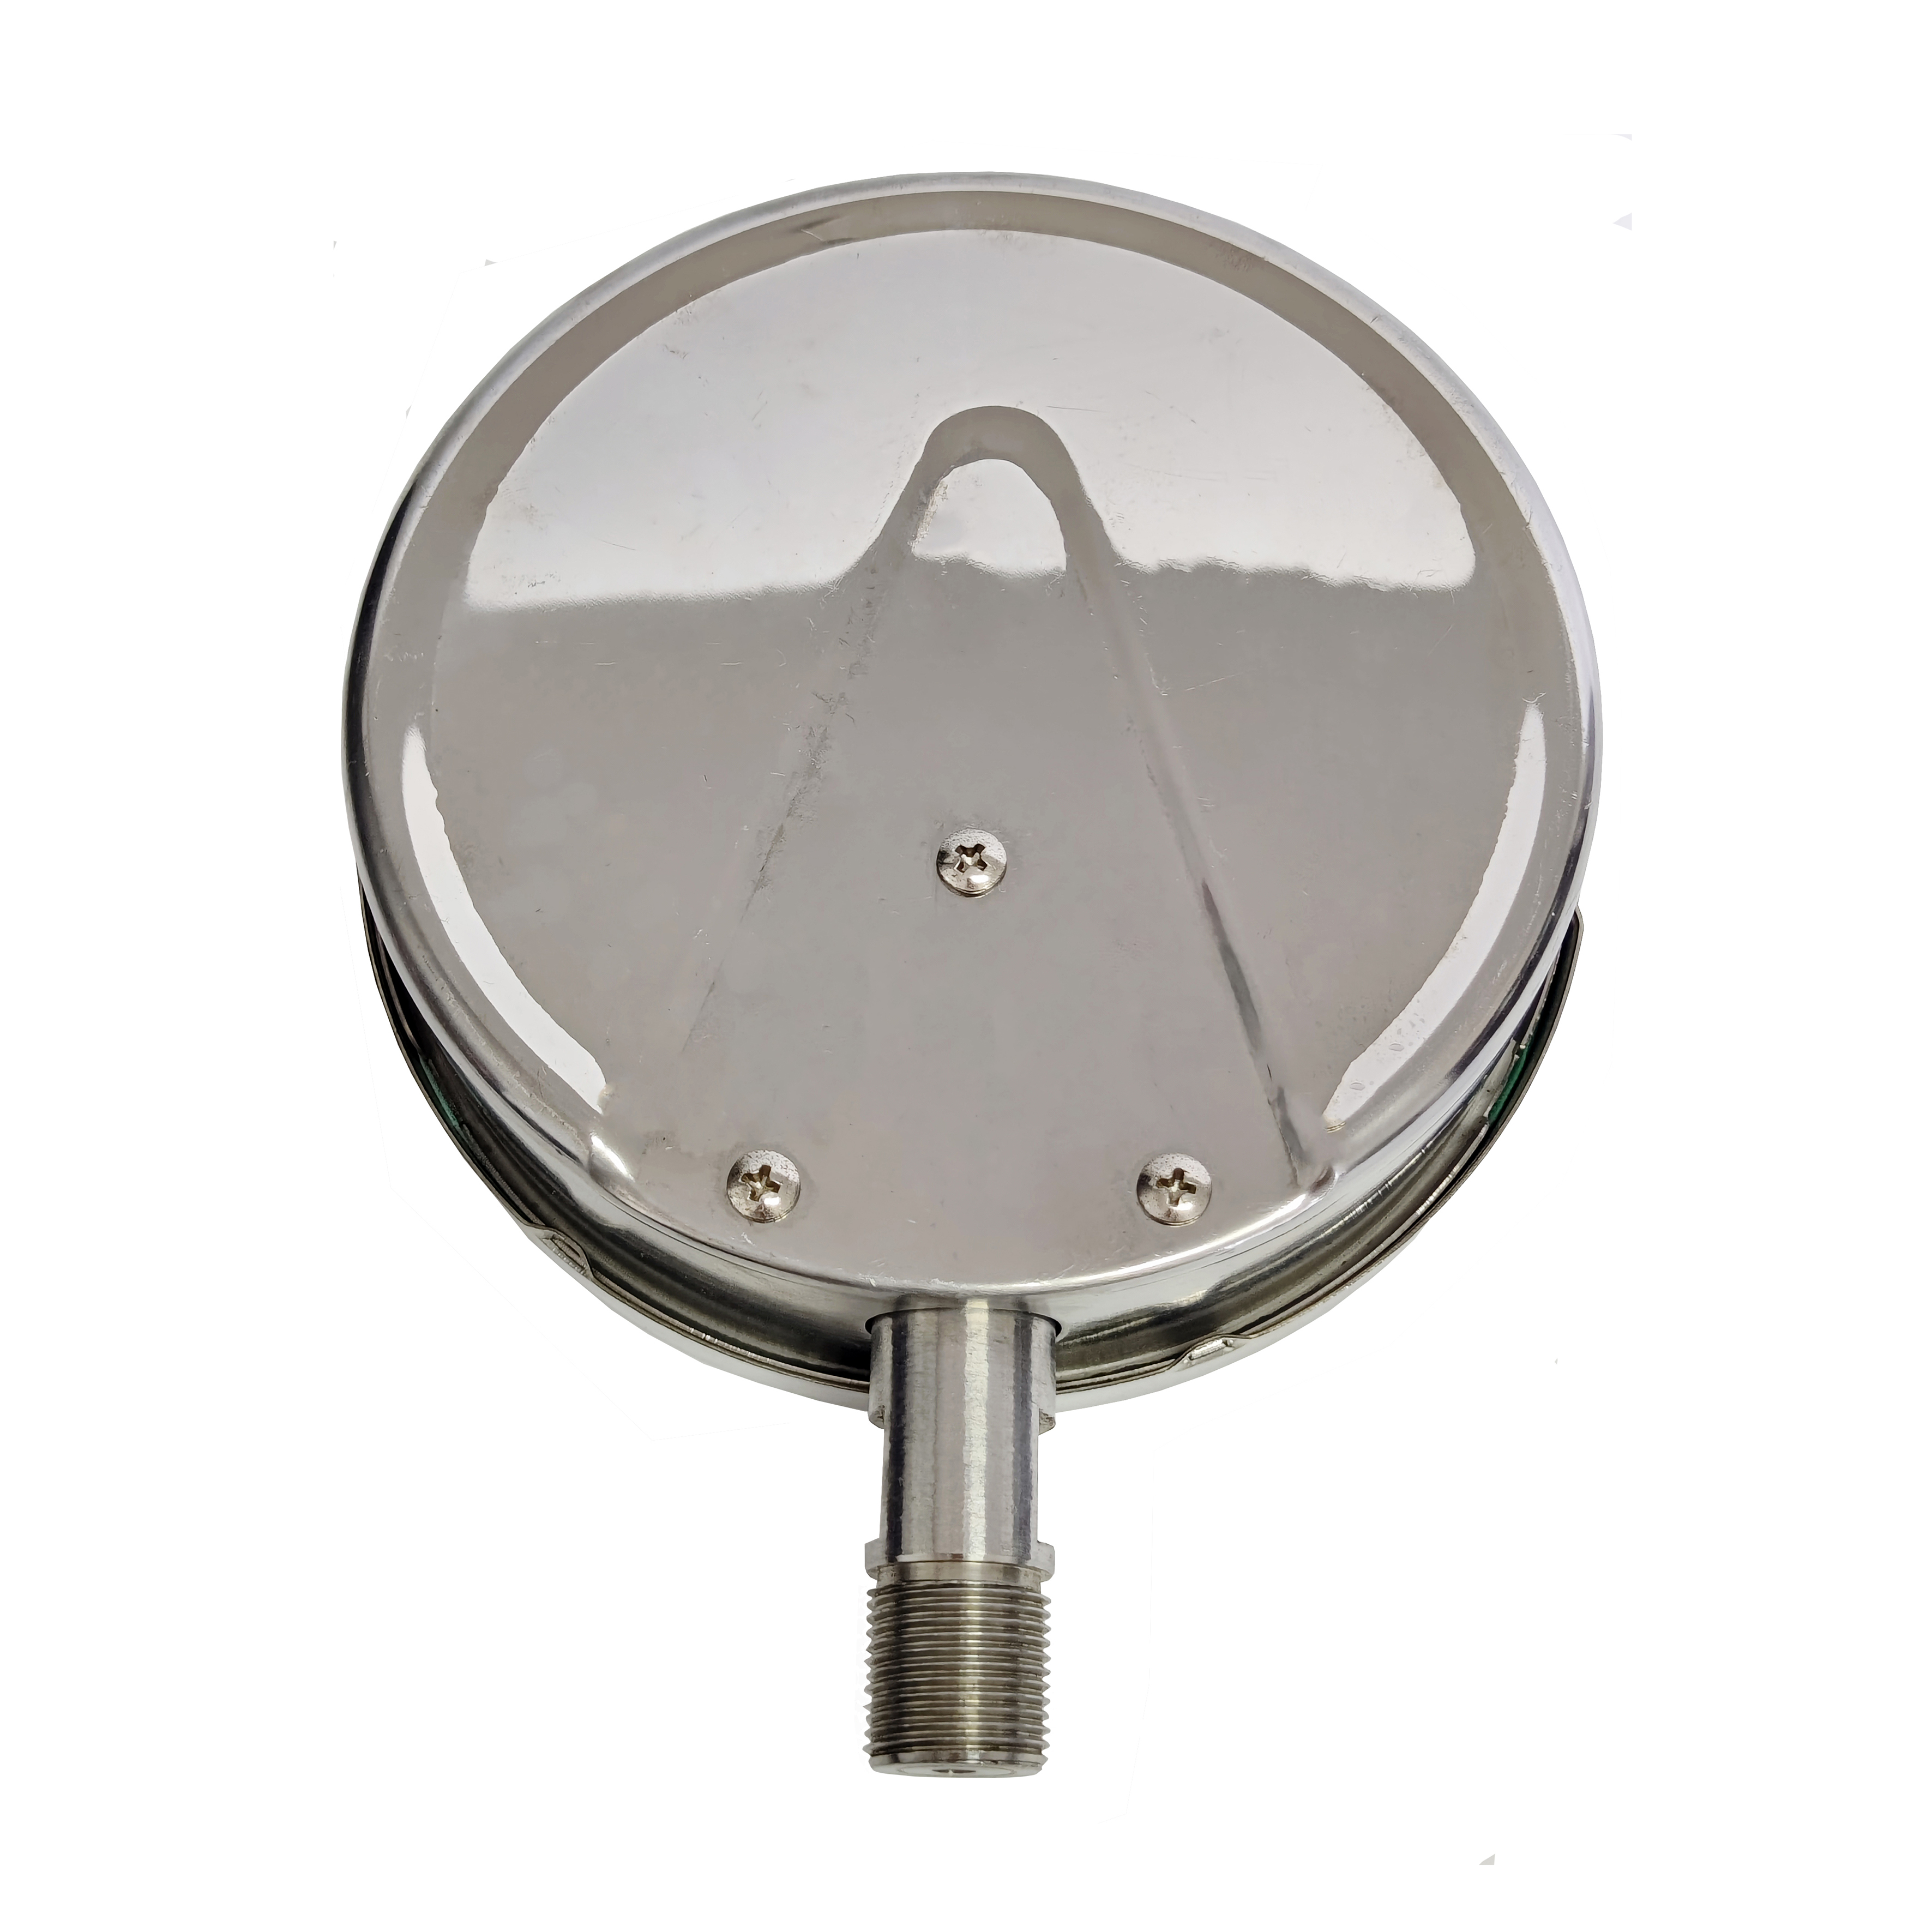 Y150BF stainless steel pressure gauge